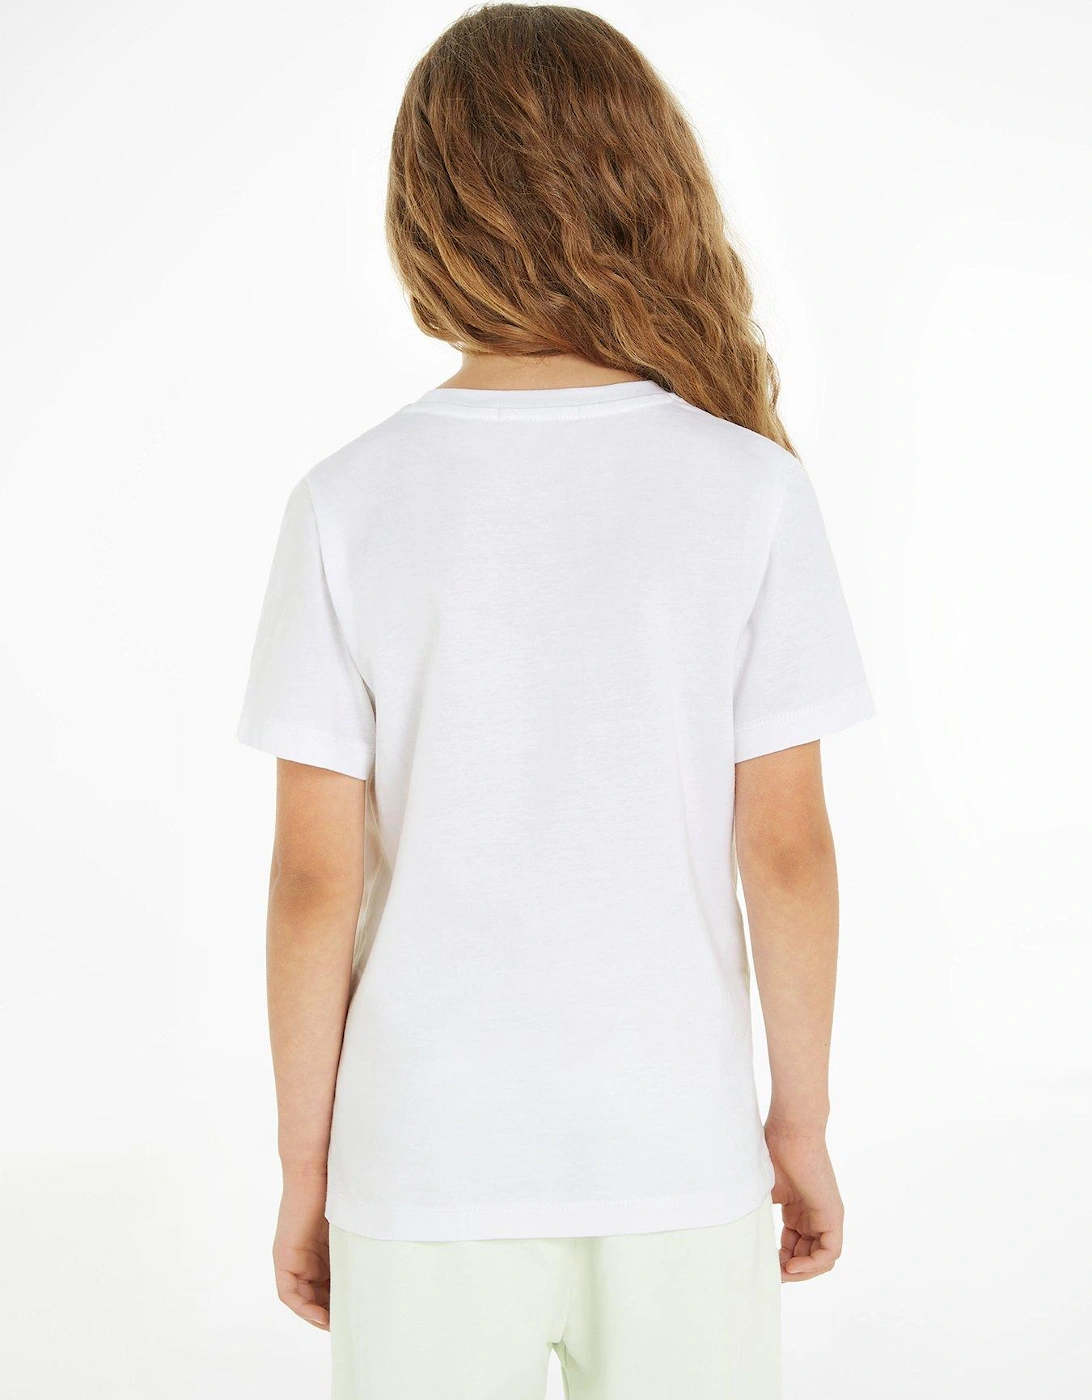 Girls Ck Monogram T-Shirt - White